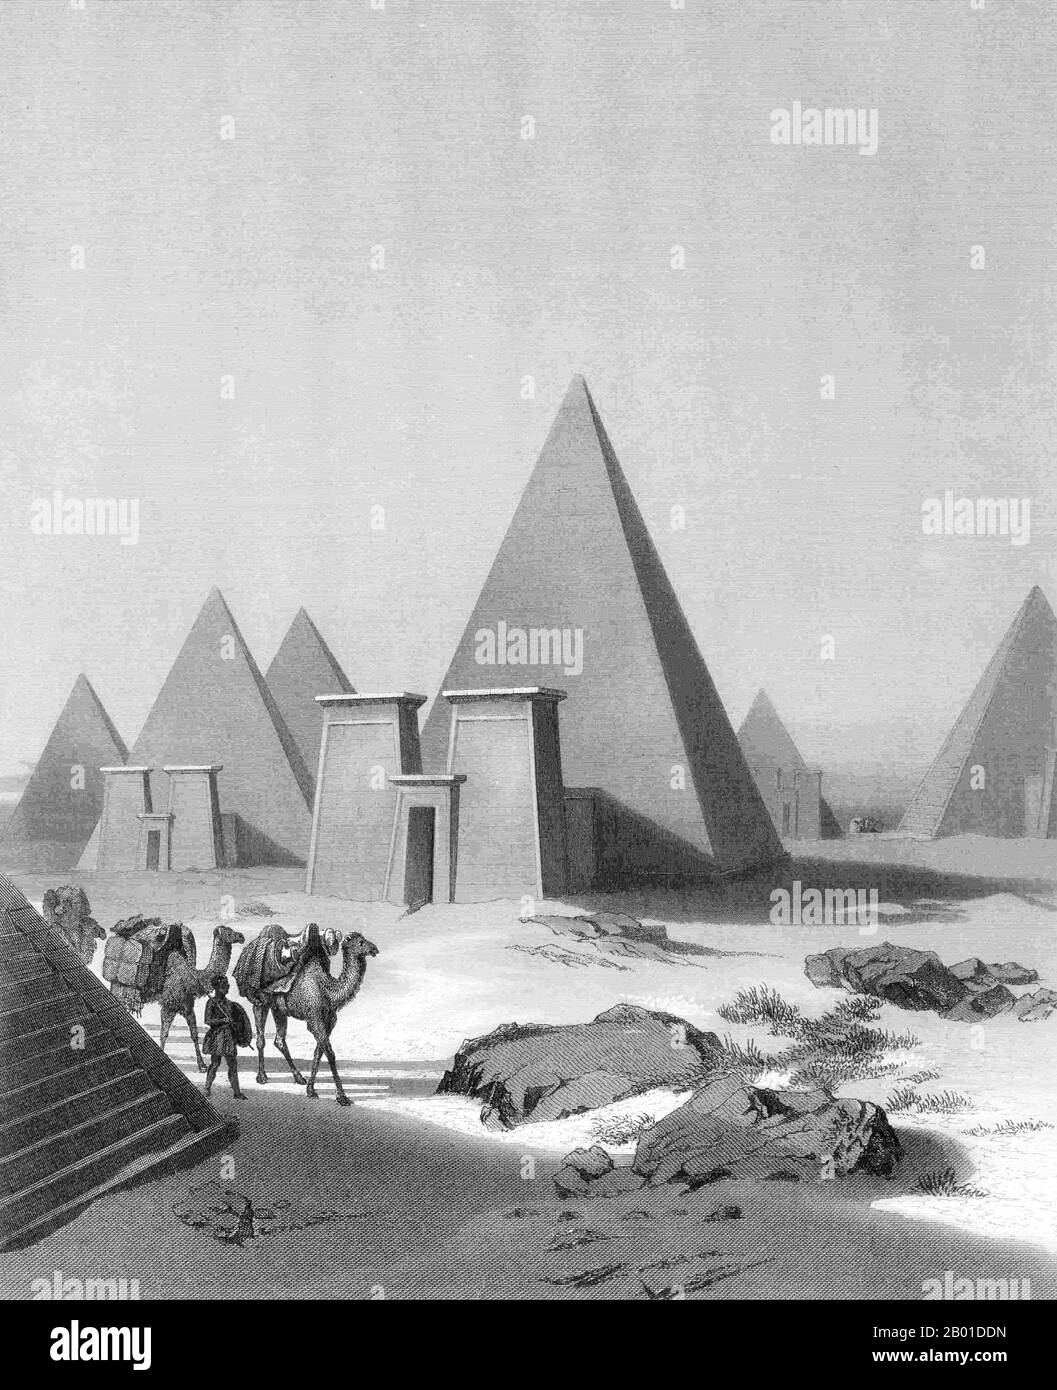 Sudan: Piramidi nubiane del periodo meroitico (circa 100 a.C. -150 d.C.) a Jebel Barkal. Incisione di William French (1815-1898) dopo Max Schmidt (1818-1901), 1850. Meroë (anche scritto Meroe) è il nome di un'antica città sulla riva orientale del Nilo, a circa 6 km a nord-est della stazione di Kabushiya vicino a Shendi, Sudan, a circa 200 km a nord-est di Khartoum. Vicino al sito si trova un gruppo di villaggi chiamati Bagrawiyah. Questa città è stata la capitale del Regno di Kush per diversi secoli. Il regno kushitico di Meroë diede il nome all'isola di Meroë, che era la moderna regione di Butana. Foto Stock